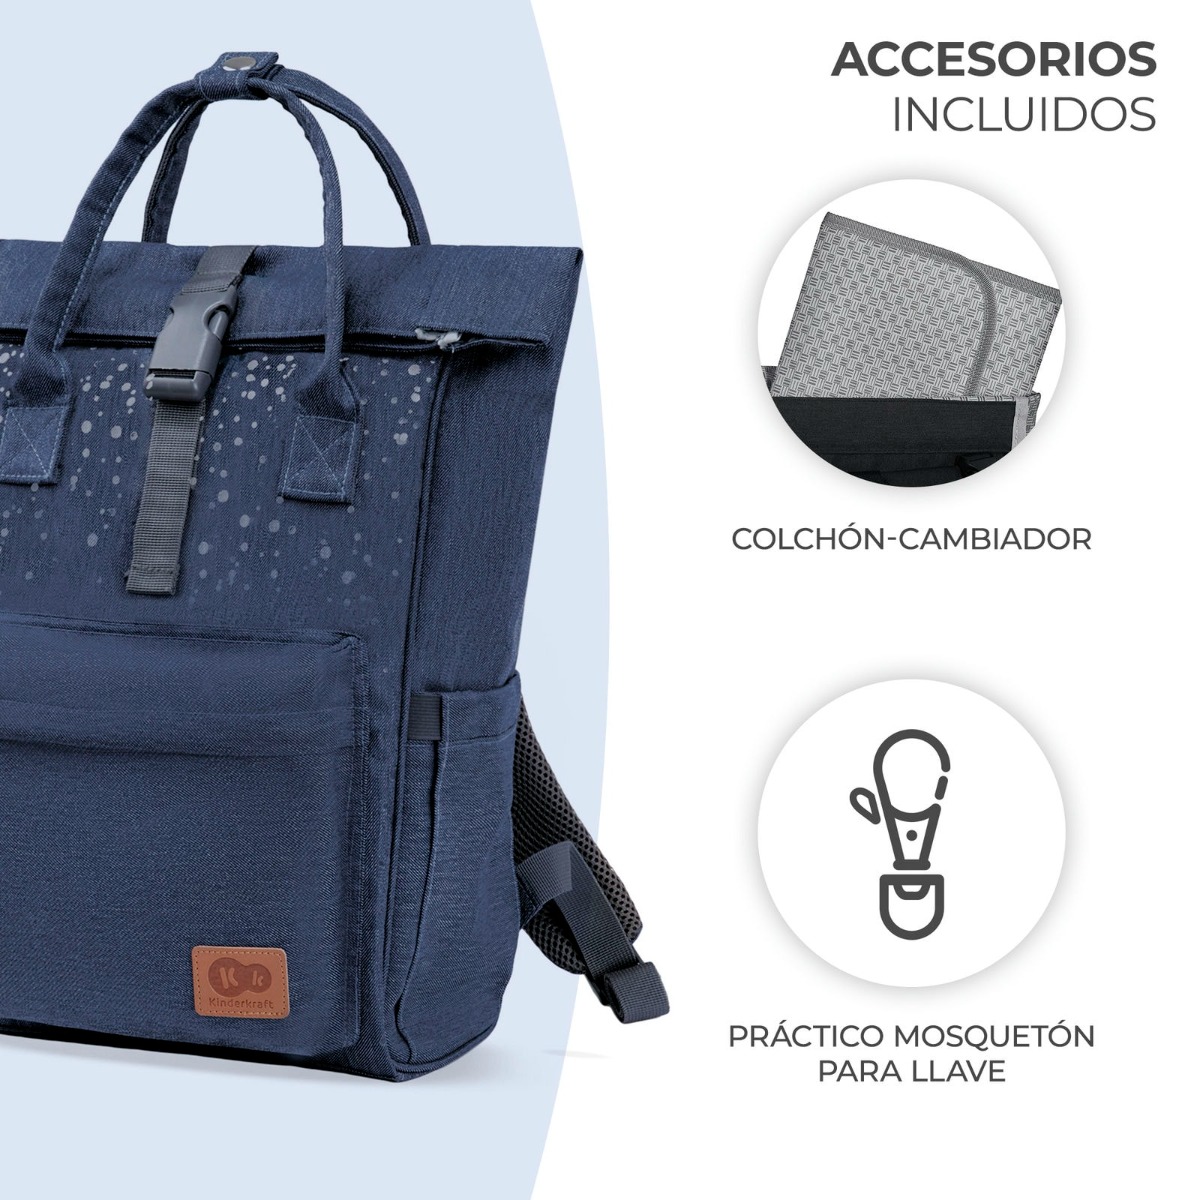 7ES-KK-moonpack-azul-accessorios-incluidos